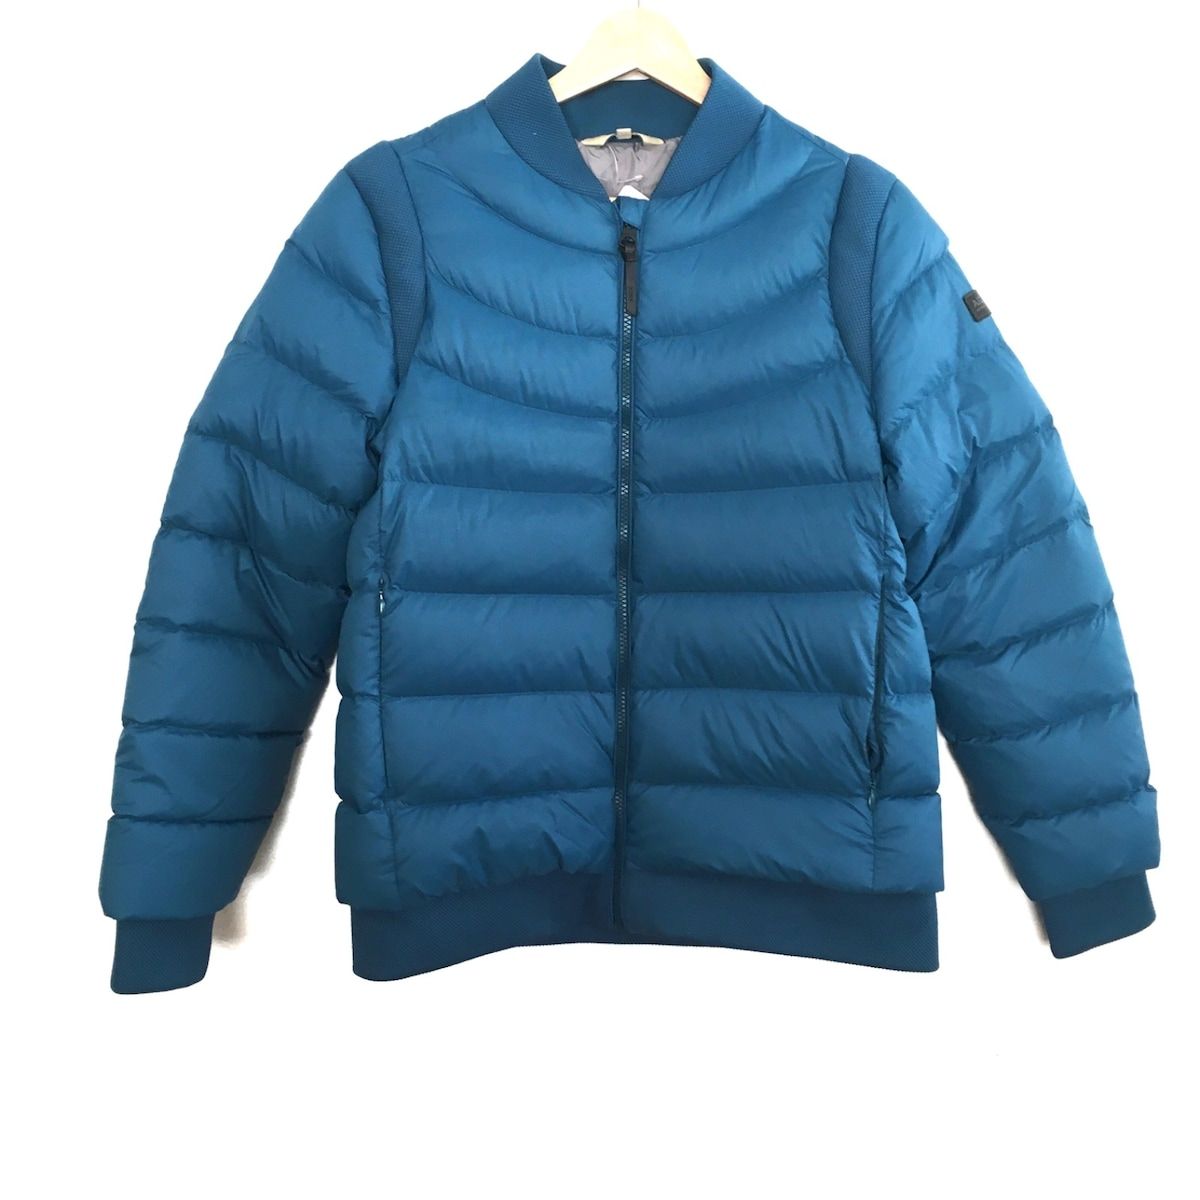 AIGLE(エーグル) ダウンジャケット サイズ38 M レディース美品 - ブルーグレー 長袖/冬